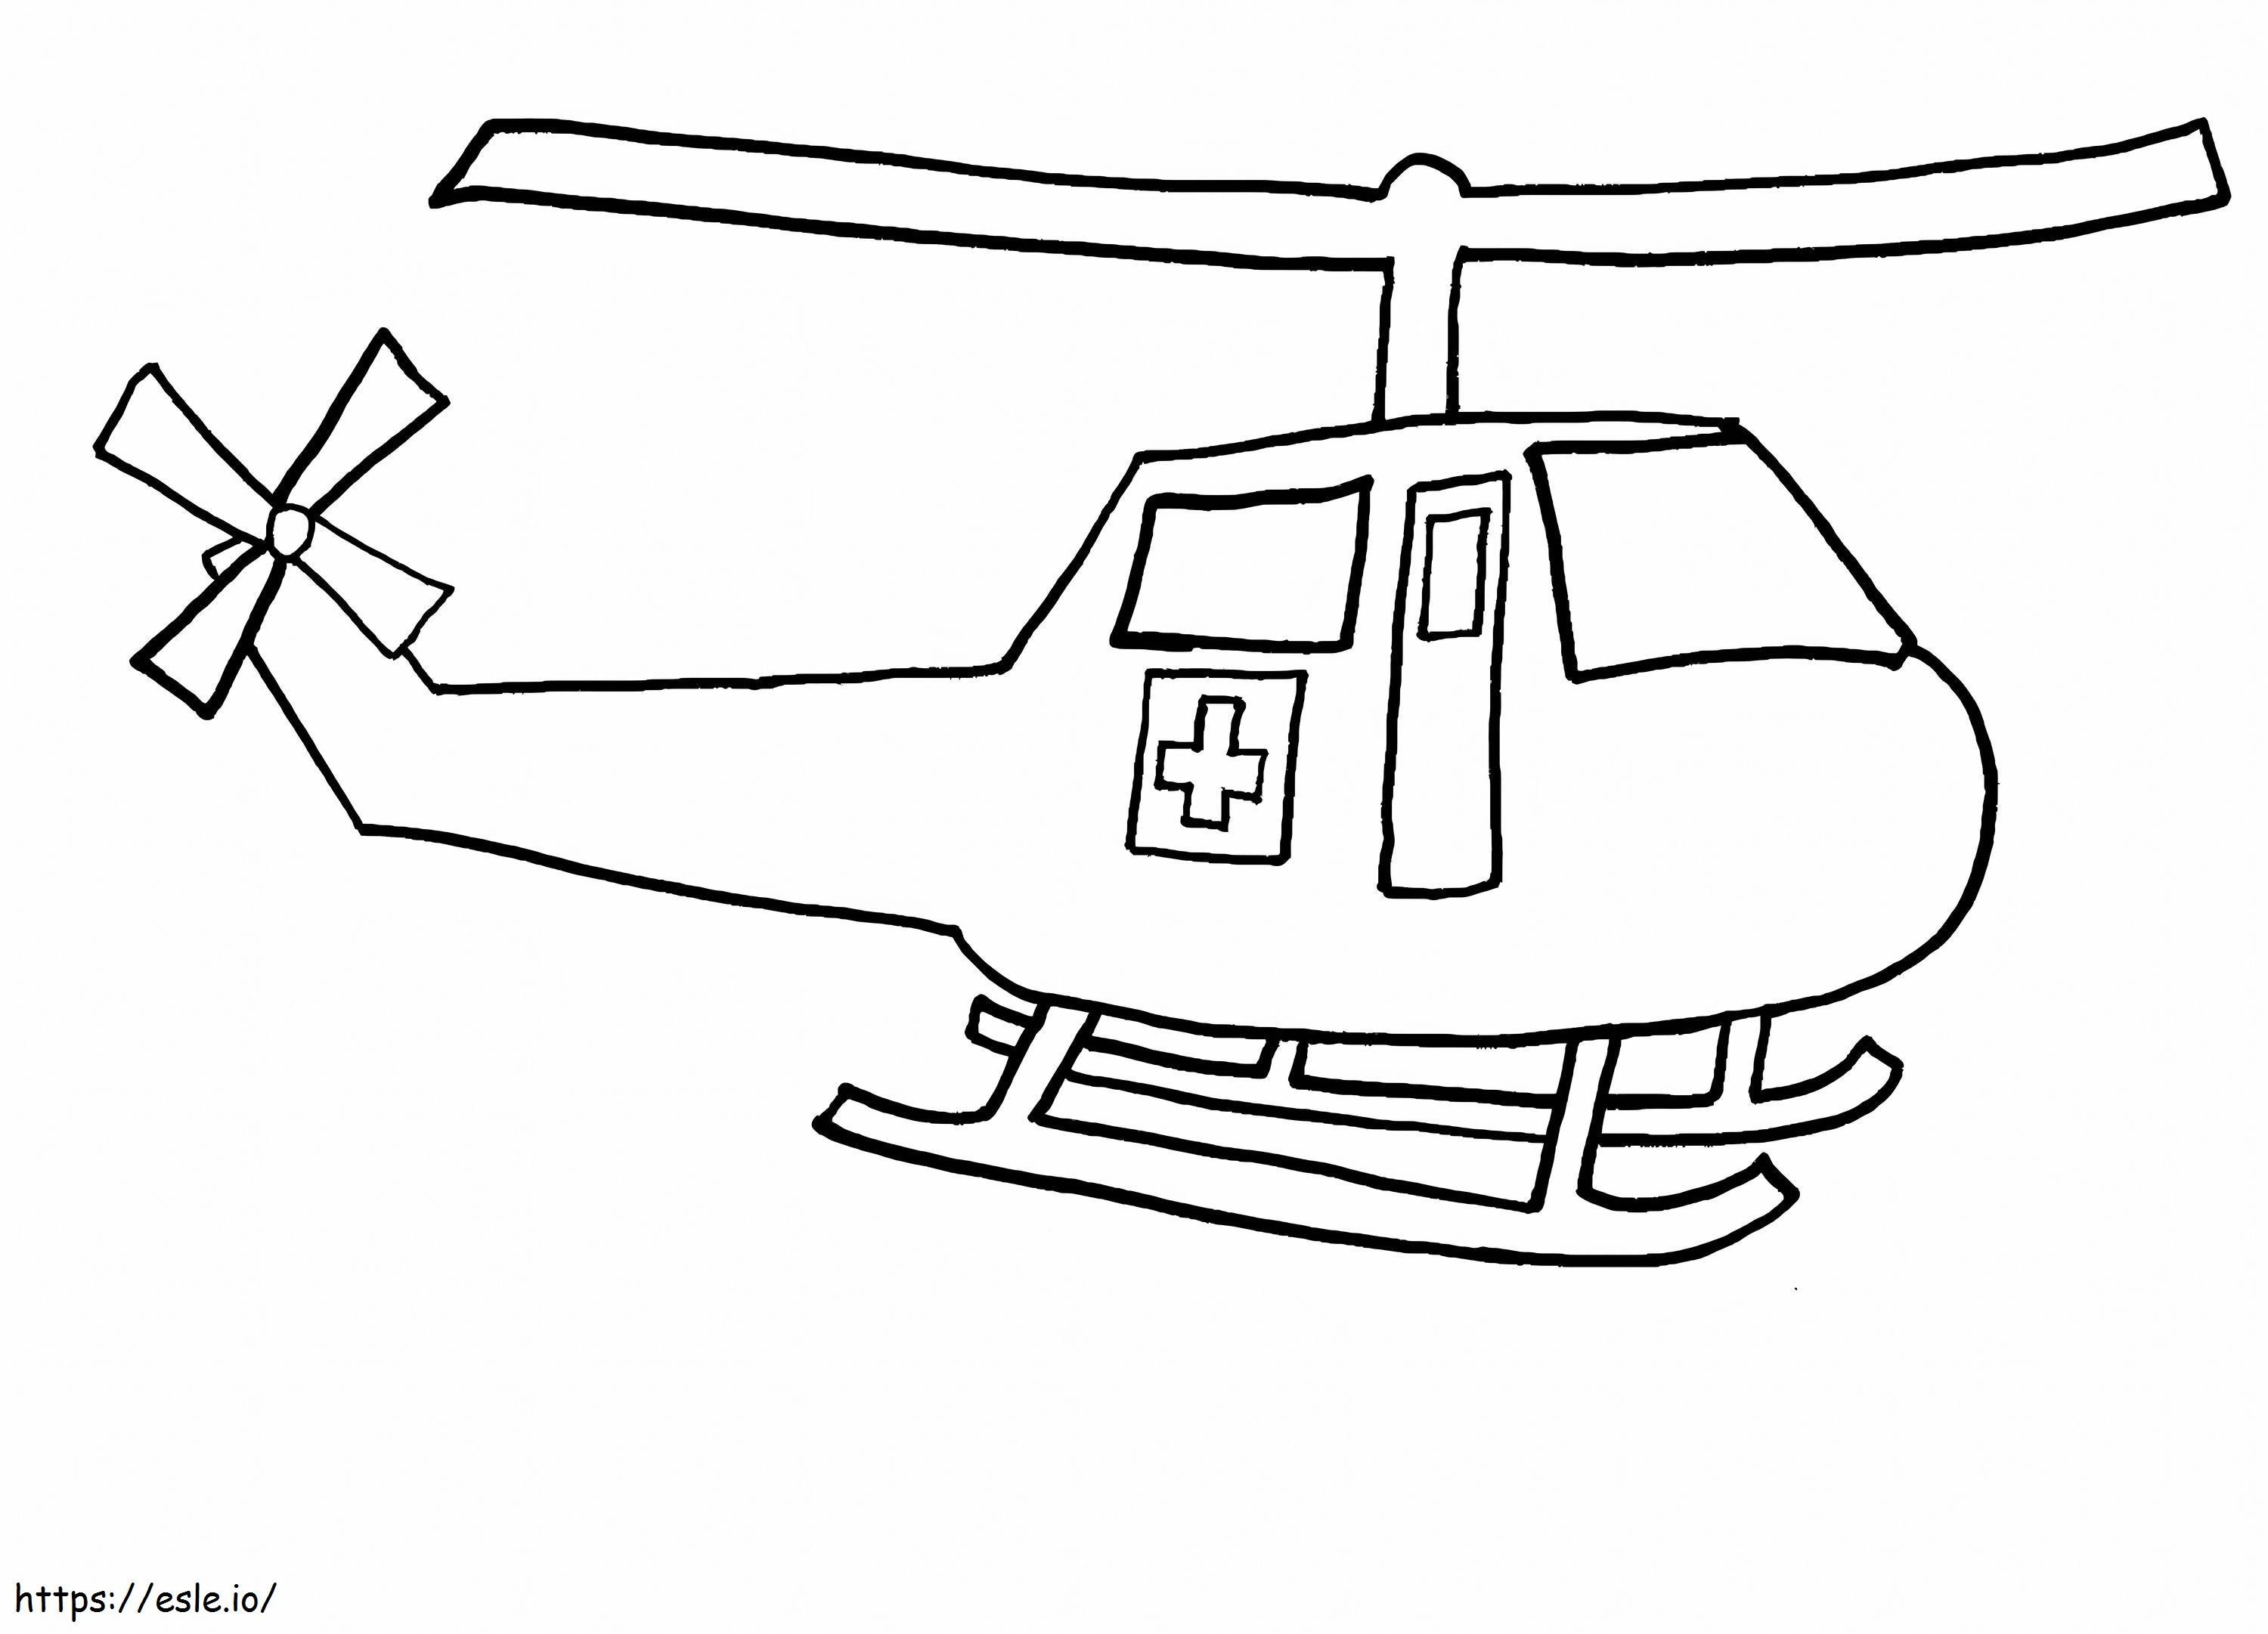 Elicopterul spitalului de colorat